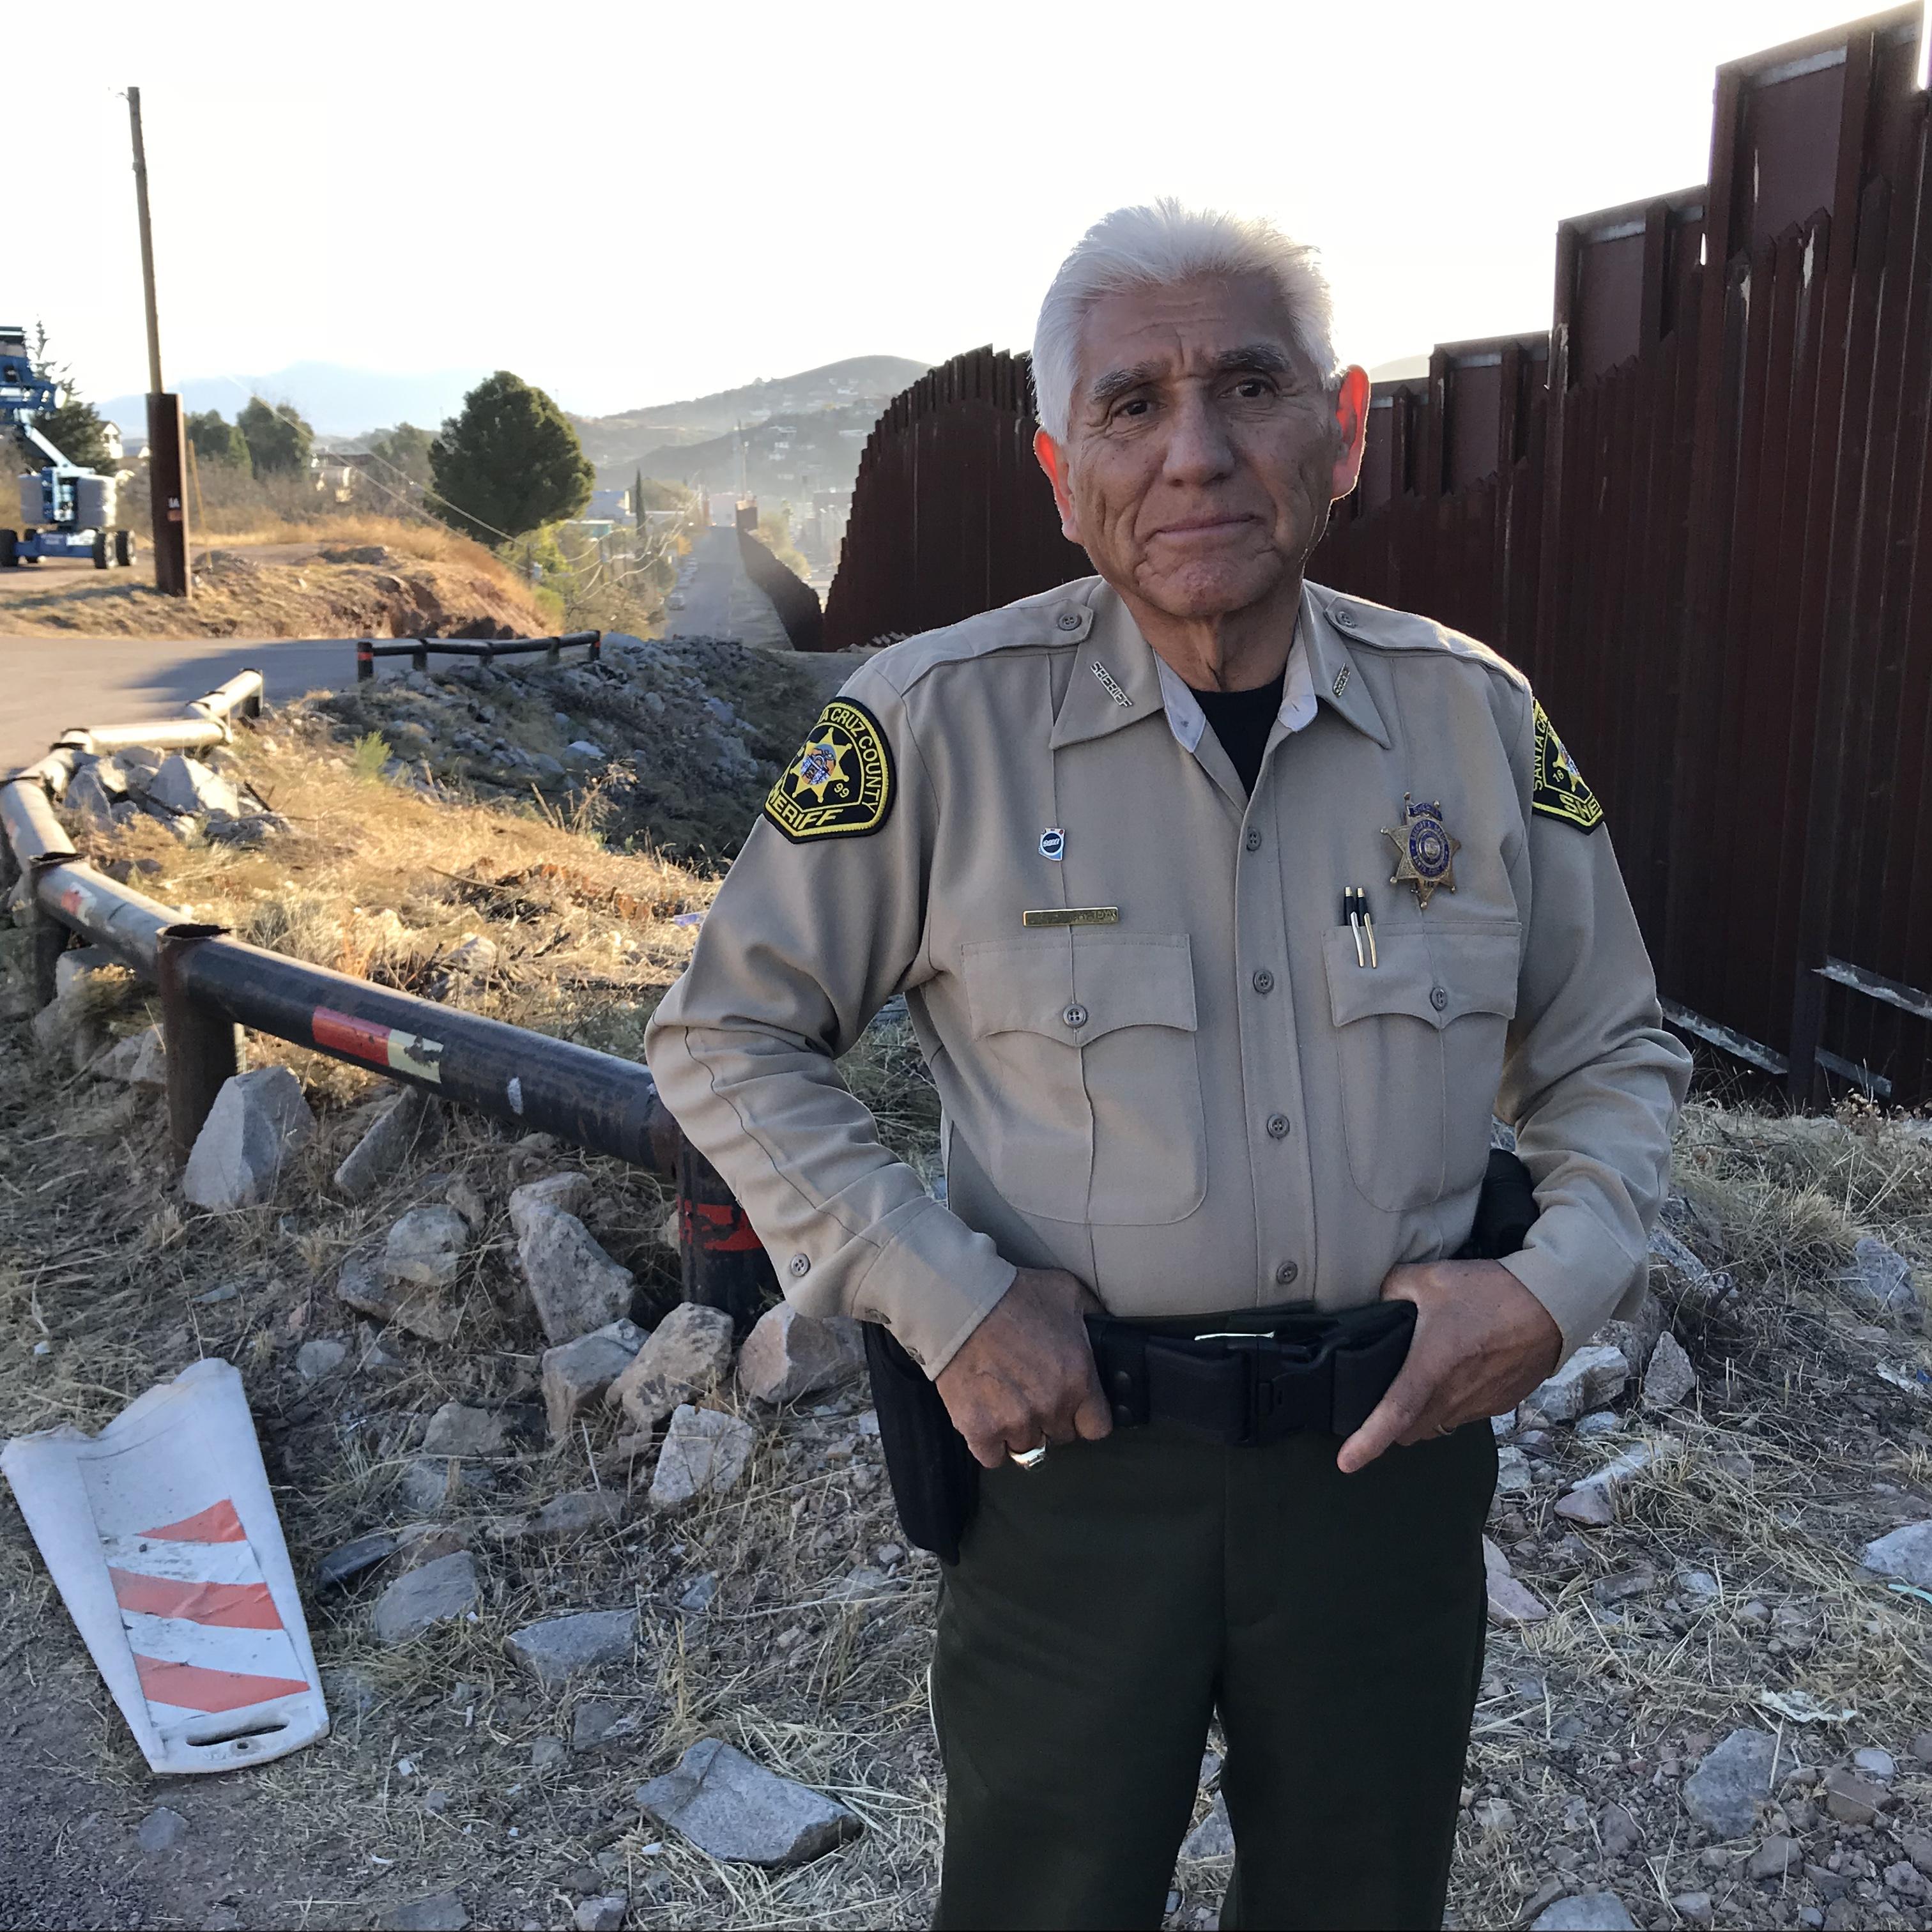 Tony Estrada, le shérif de Nogales. [RTS - Raphaël Grand]